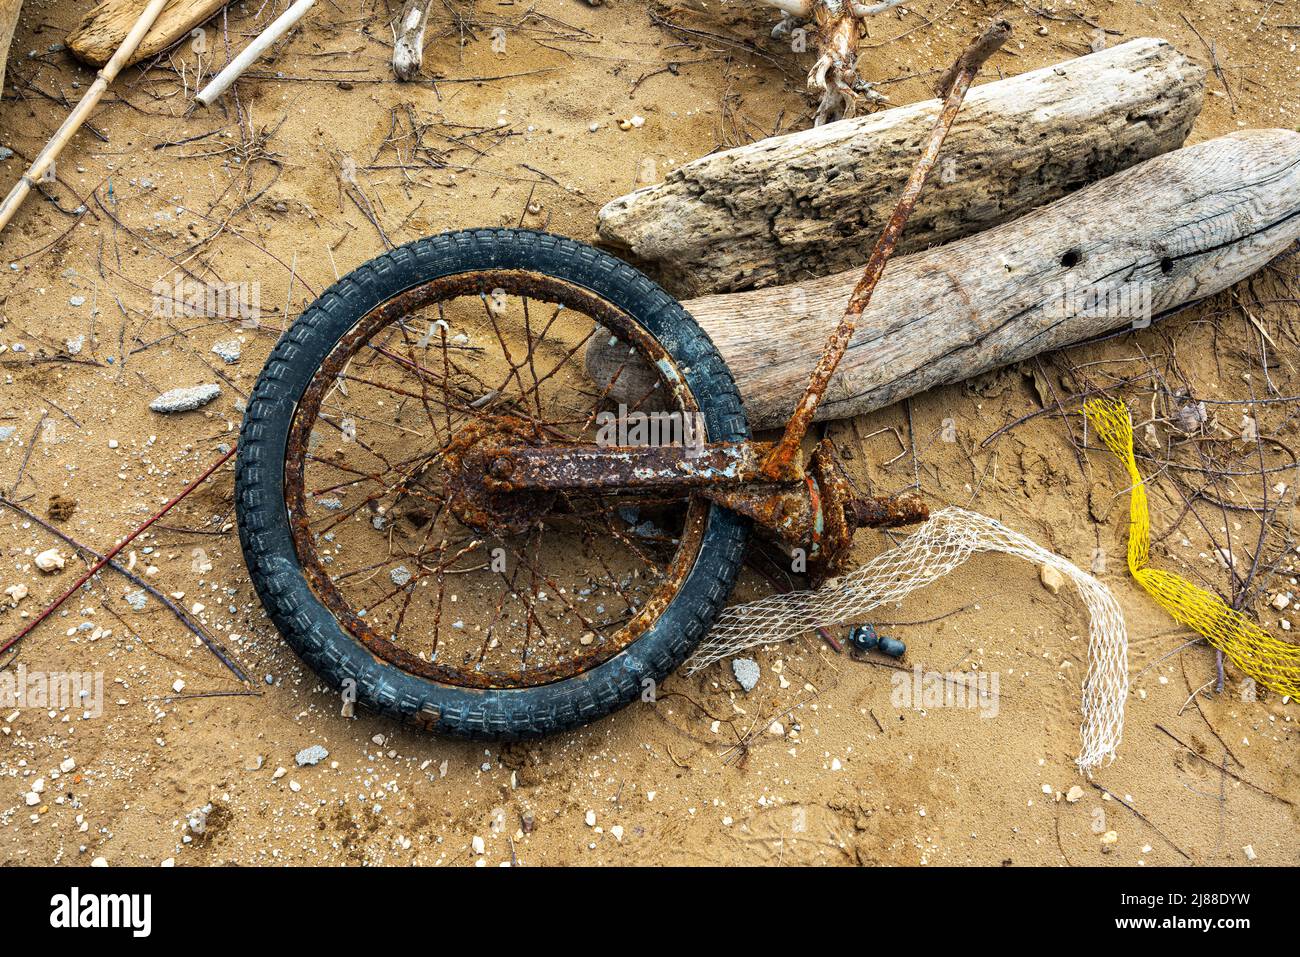 Reste d'un vélo rouillé et des troncs apportés à la plage par la tempête. Puglia, Italie, Europe Banque D'Images